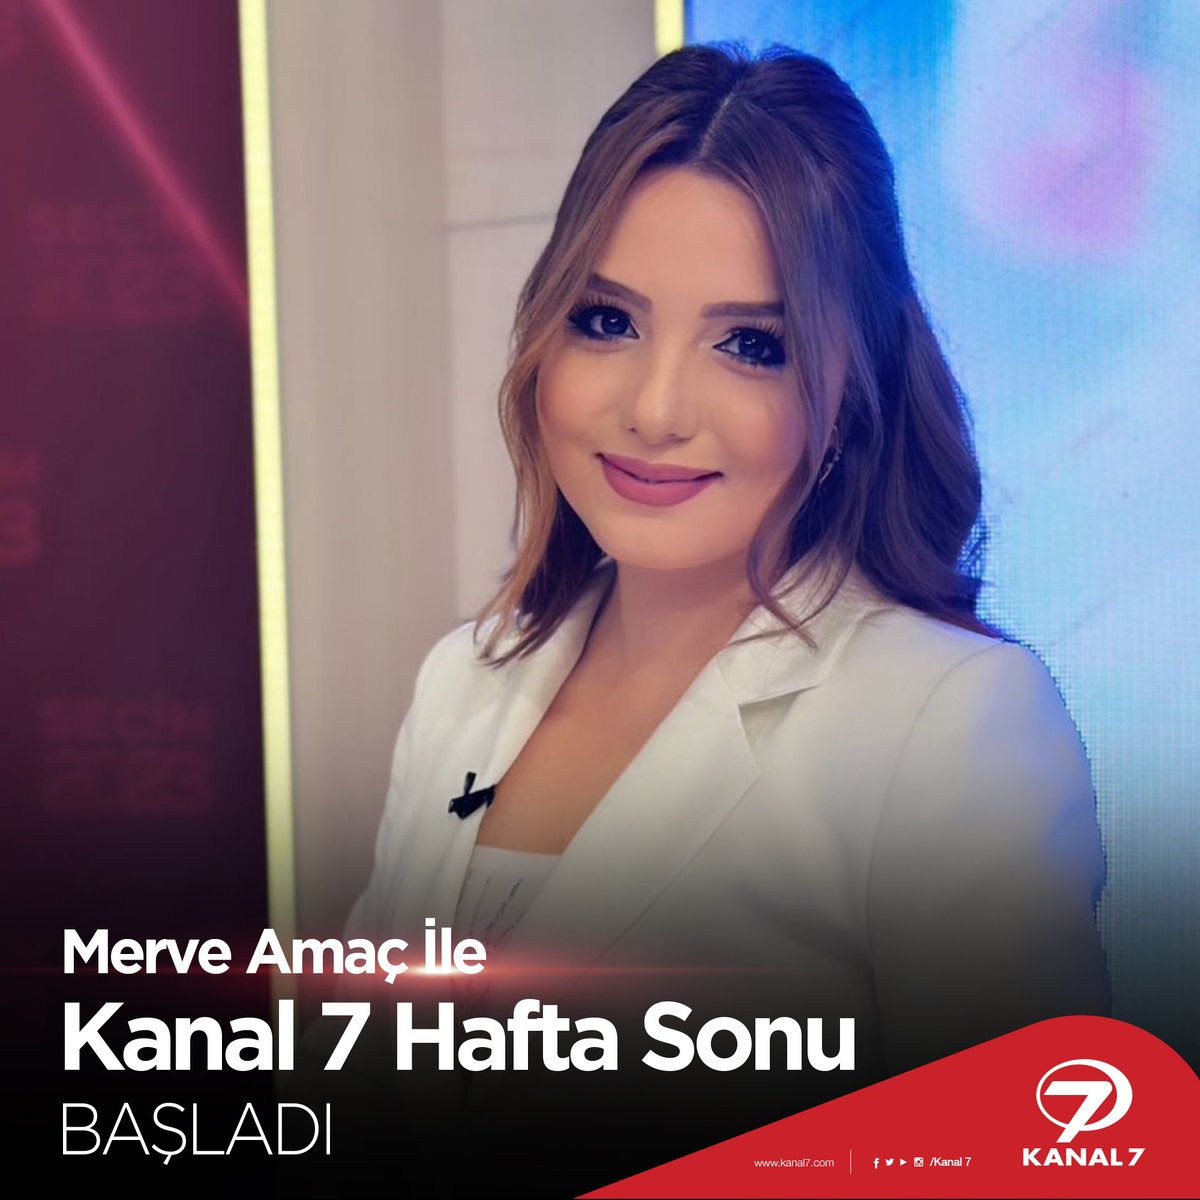 Gündemin nabzını tuttuğumuz Merve Amaç ile Kanal 7 Hafta Sonu şimdi başladı! 📢 👉👉Gündeme dair görüşlerinizi #Kanal7deSabah etiketi ile bizimle paylaşabilirsiniz. #kanal7 #haber #sondakika #gündem #haberler #günaydın